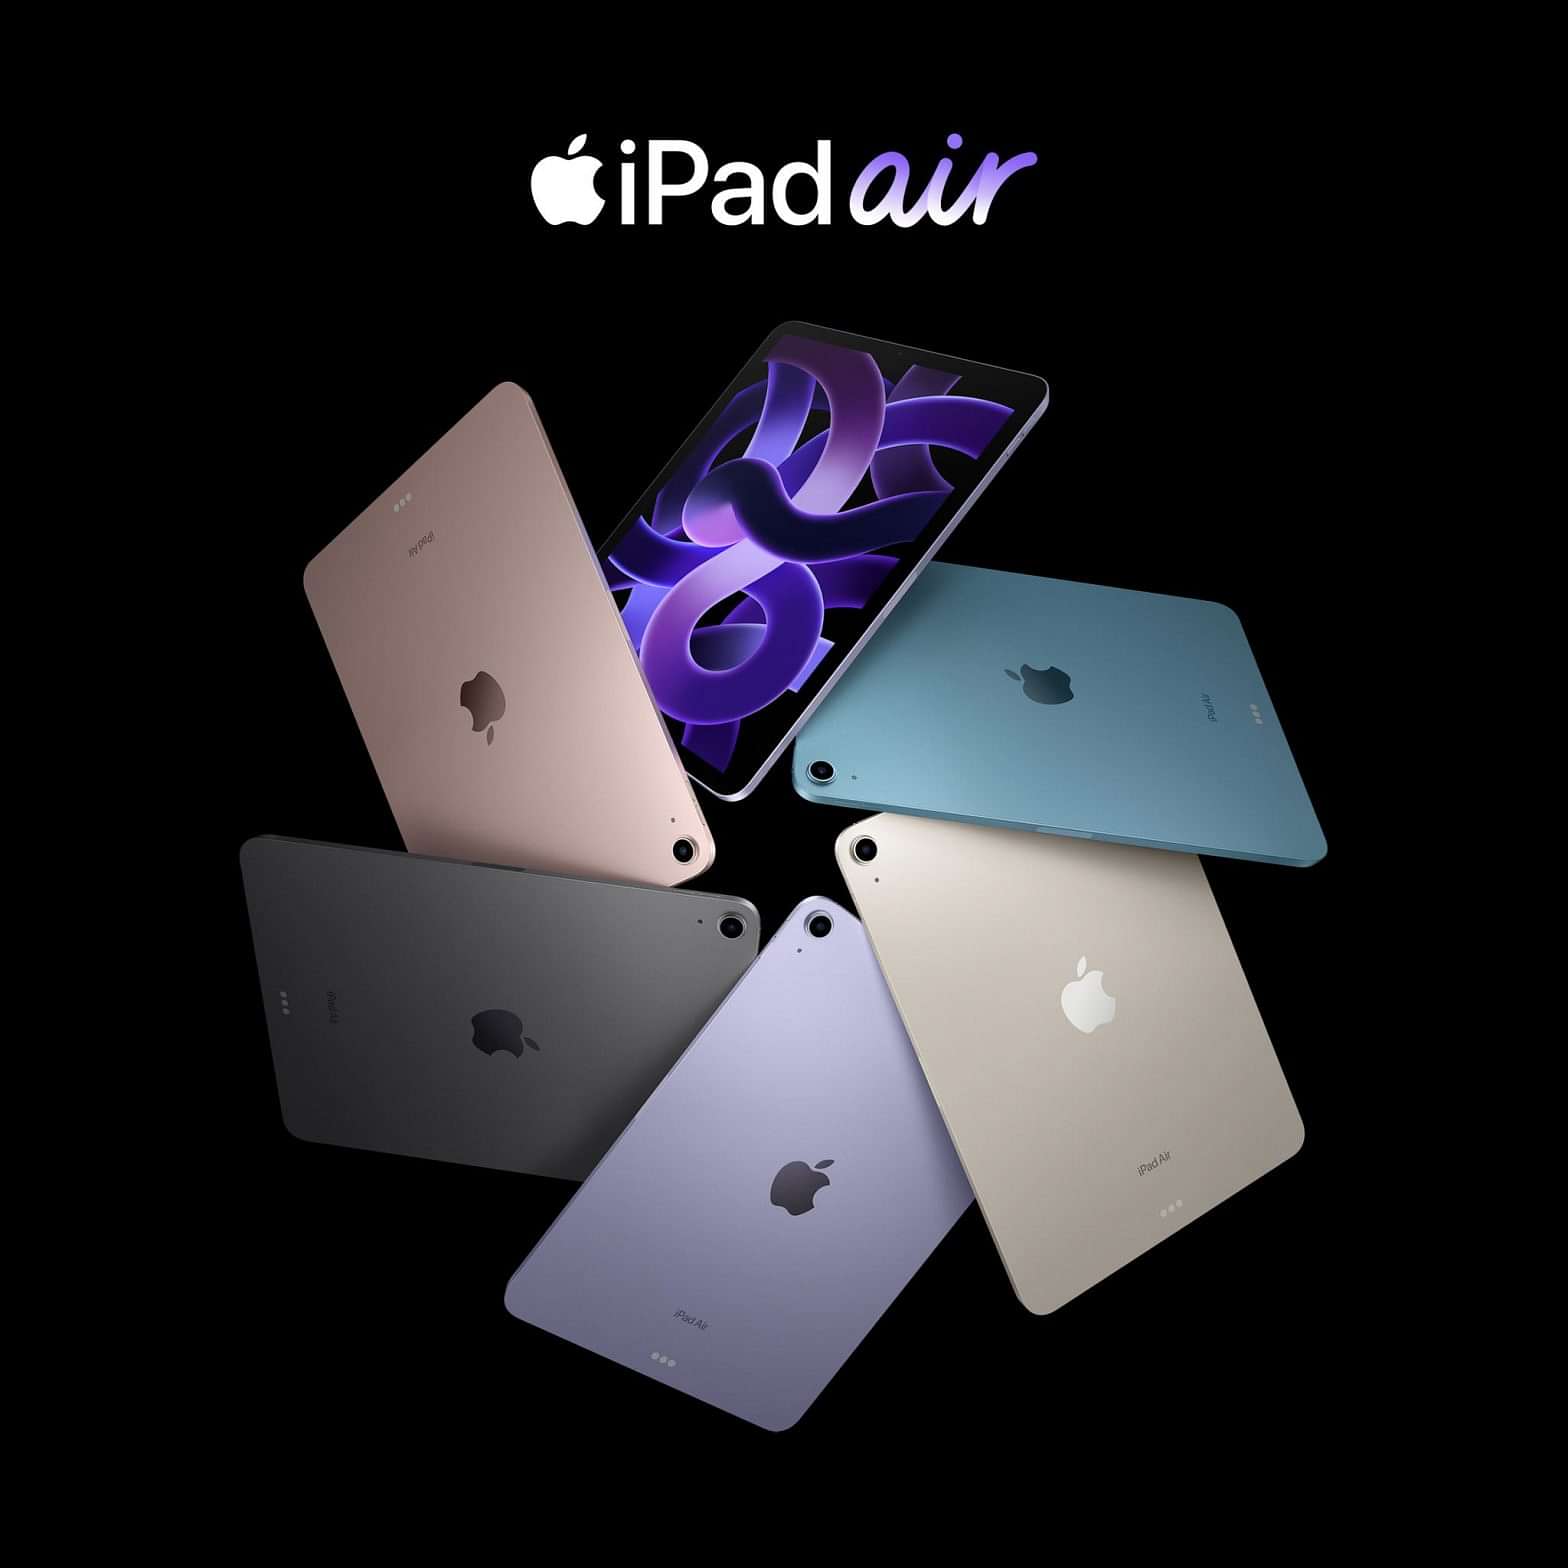 【全新iPad Air現已接受預訂】
全新iPad Air由 Apple M1 晶片強勢驅動、支援SmarTone 5G帶嚟超快5G體驗、配備「人物置中」的全新前置鏡頭、與頂部按鈕結合的 Touch ID,，以及引人入勝的10.9 吋 L